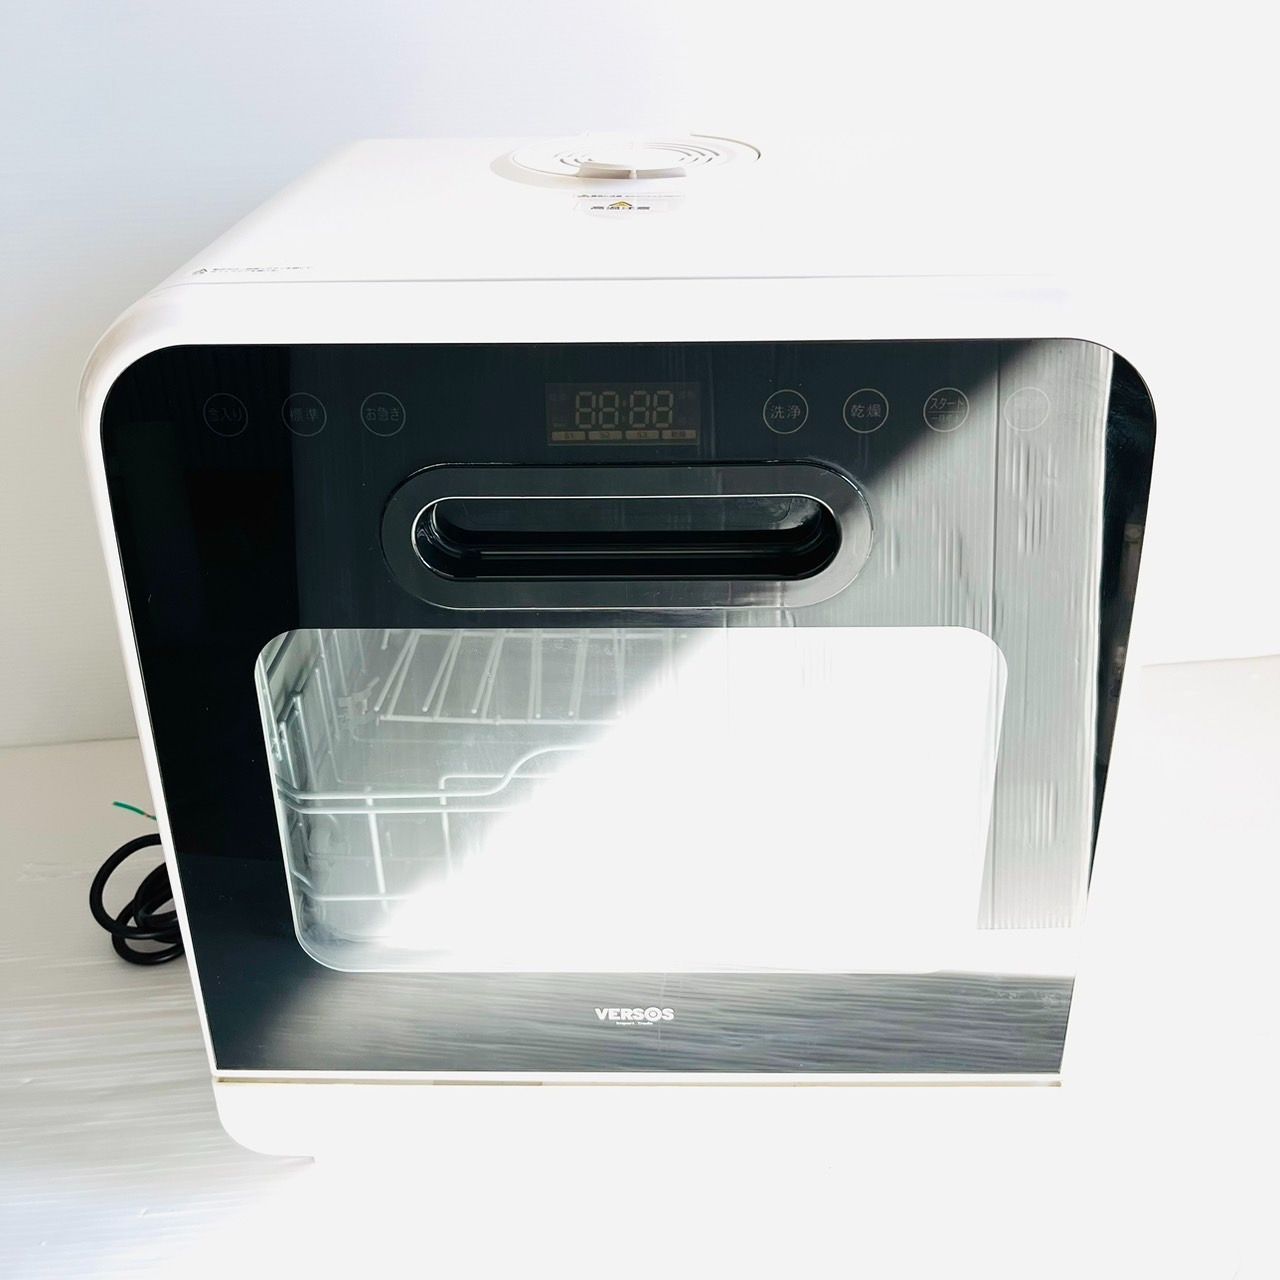 【 新品未使用未開封品 】ベルソス VS-H021 食器洗い乾燥機